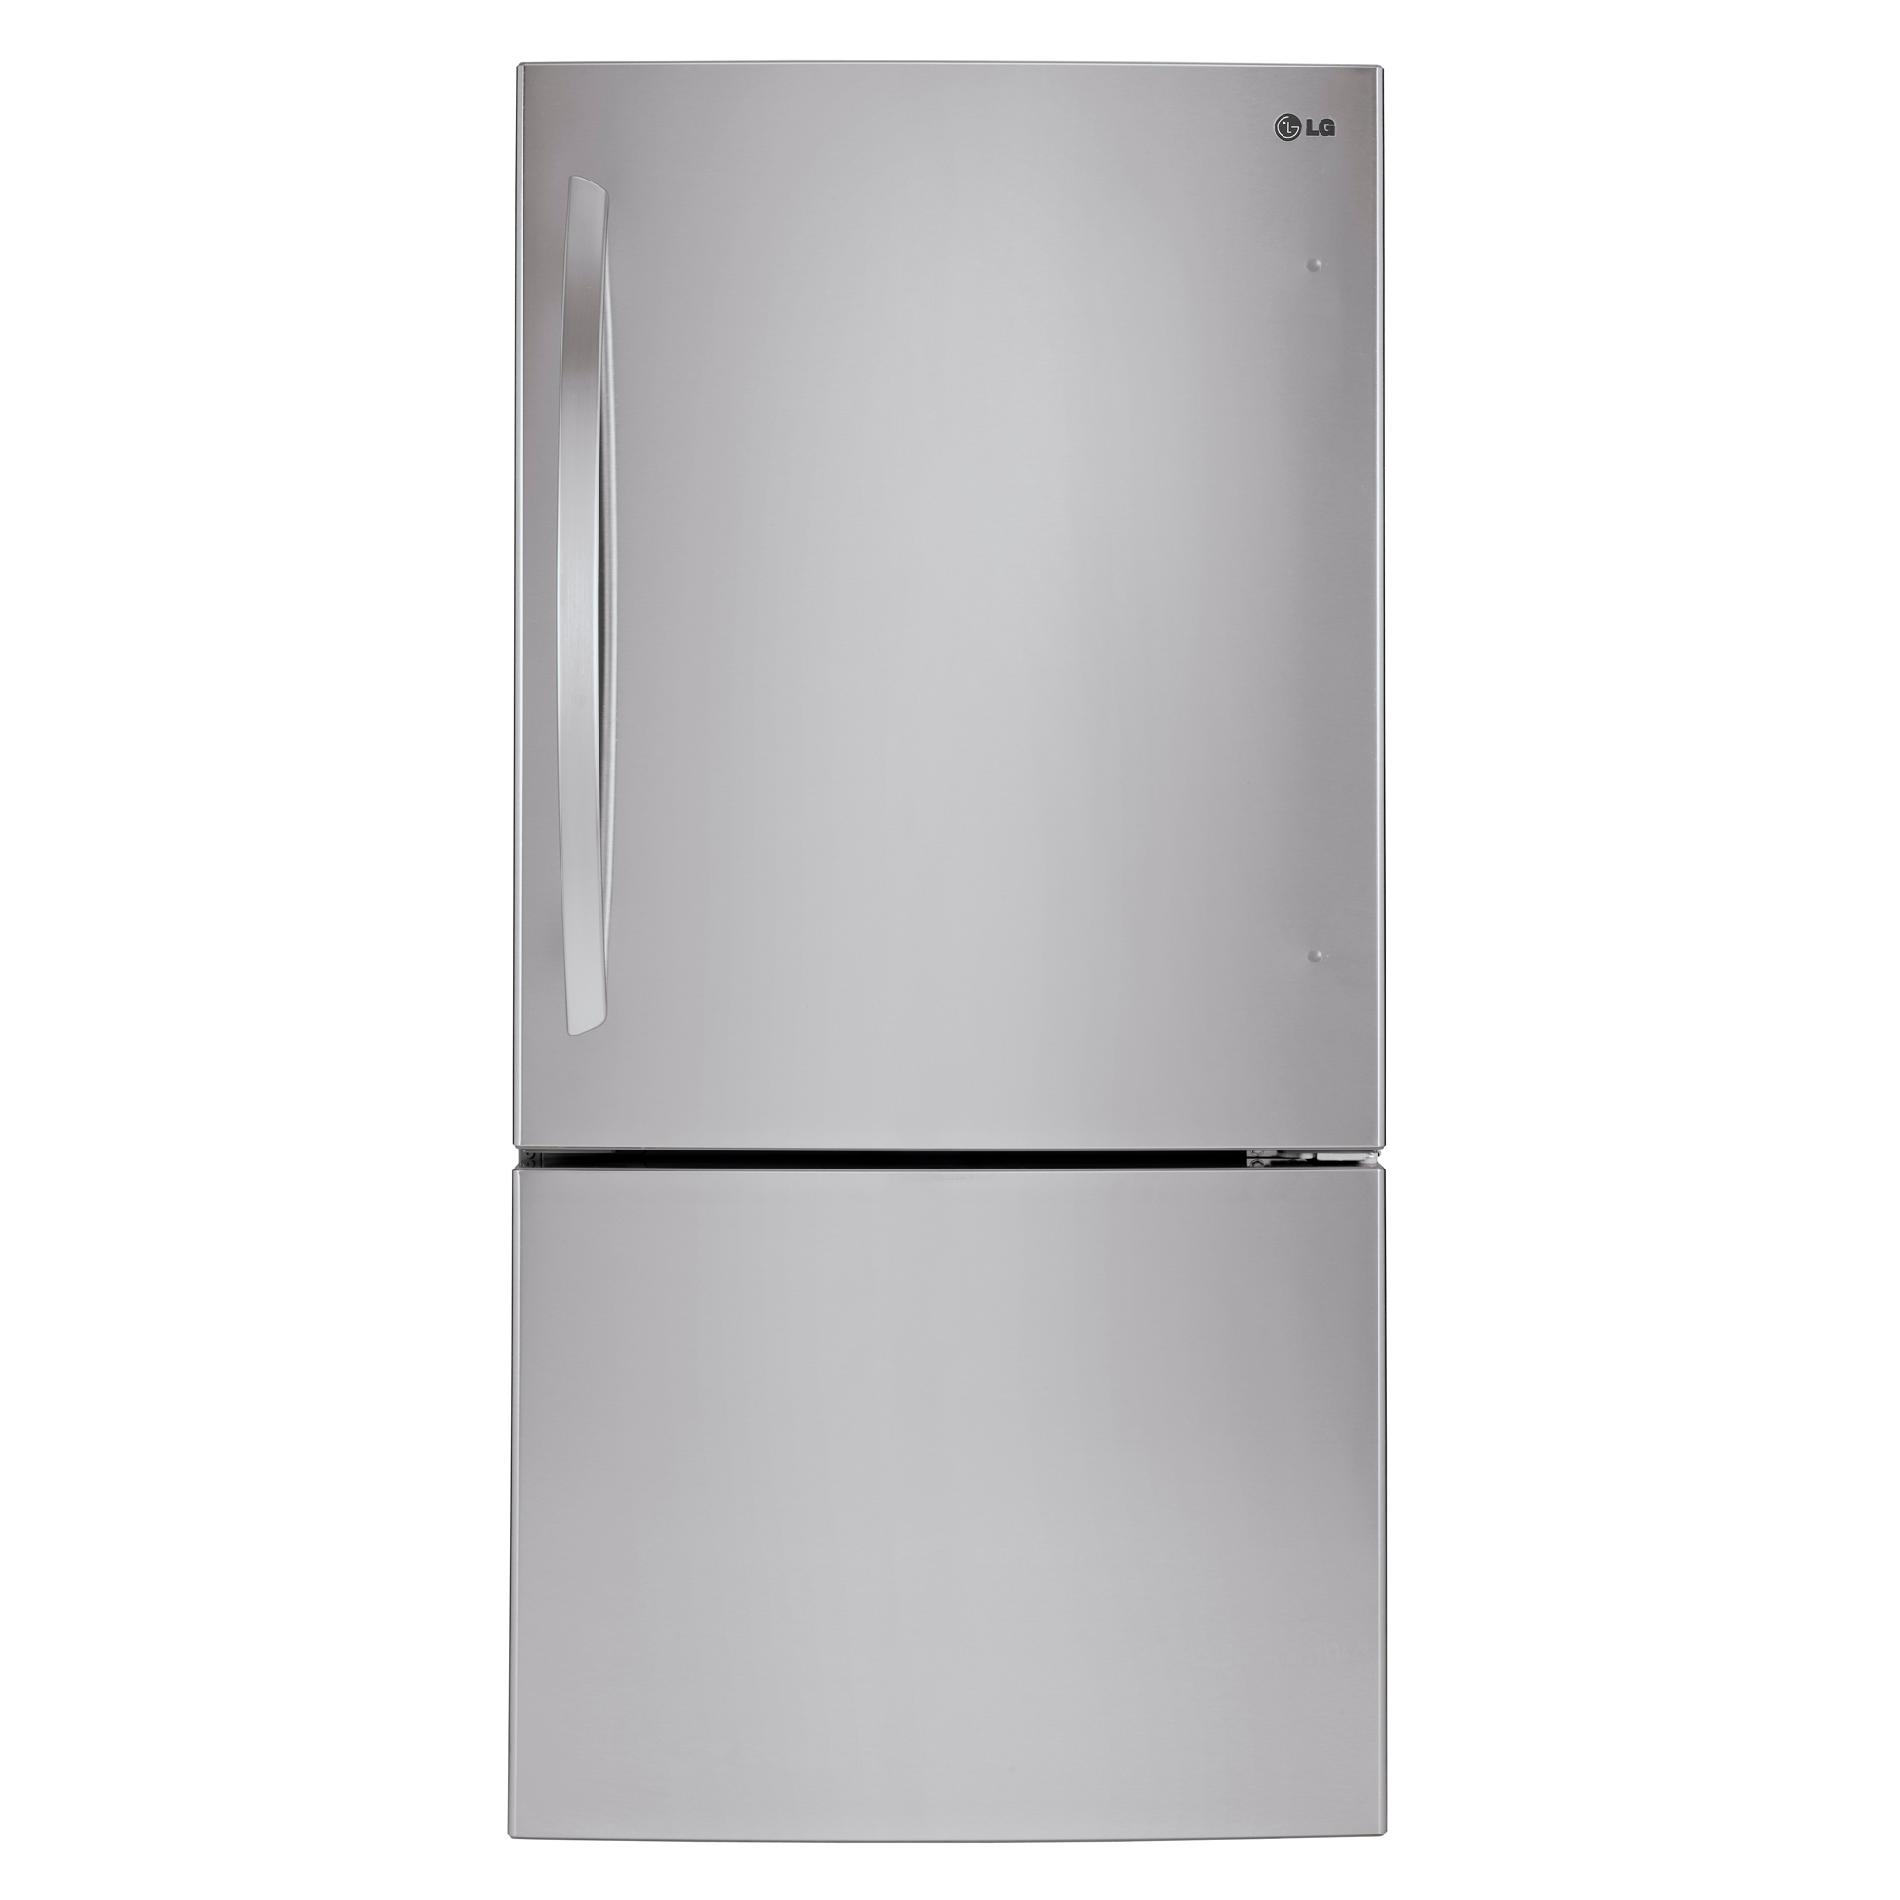 SingleDoor Bottom Freezer Refrigerator Sears